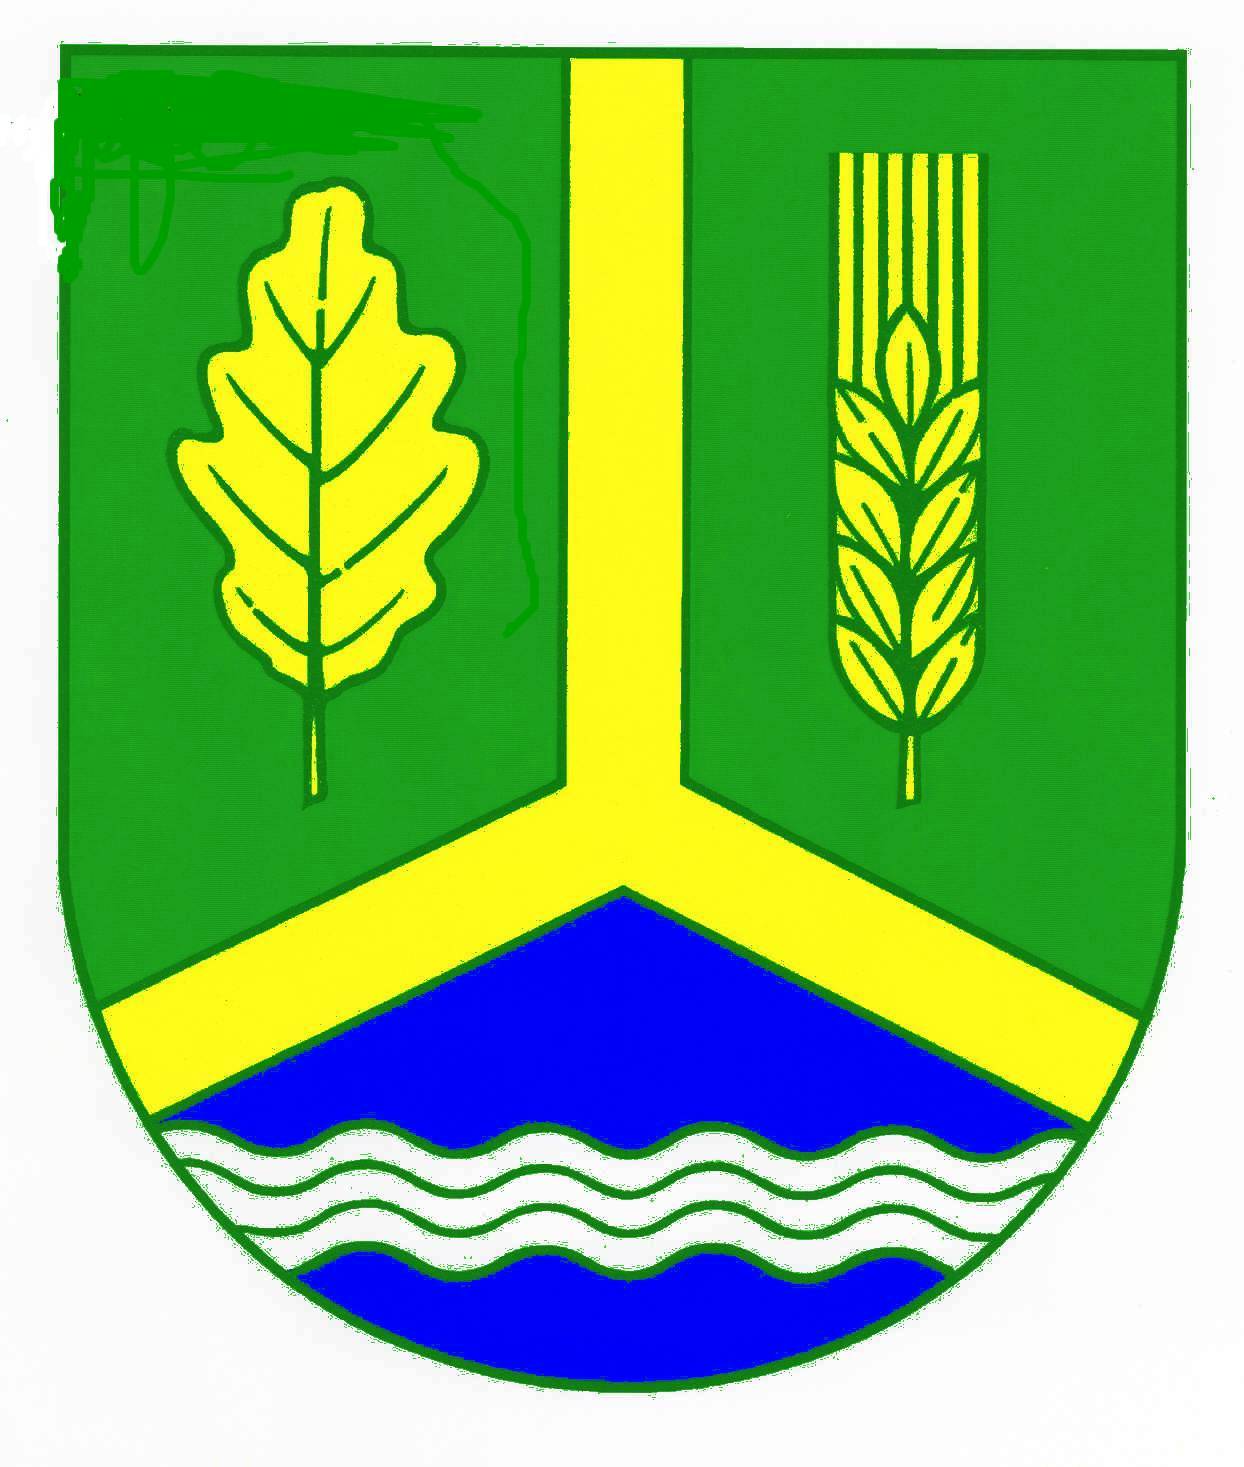 Wappen Gemeinde Meddewade, Kreis Stormarn